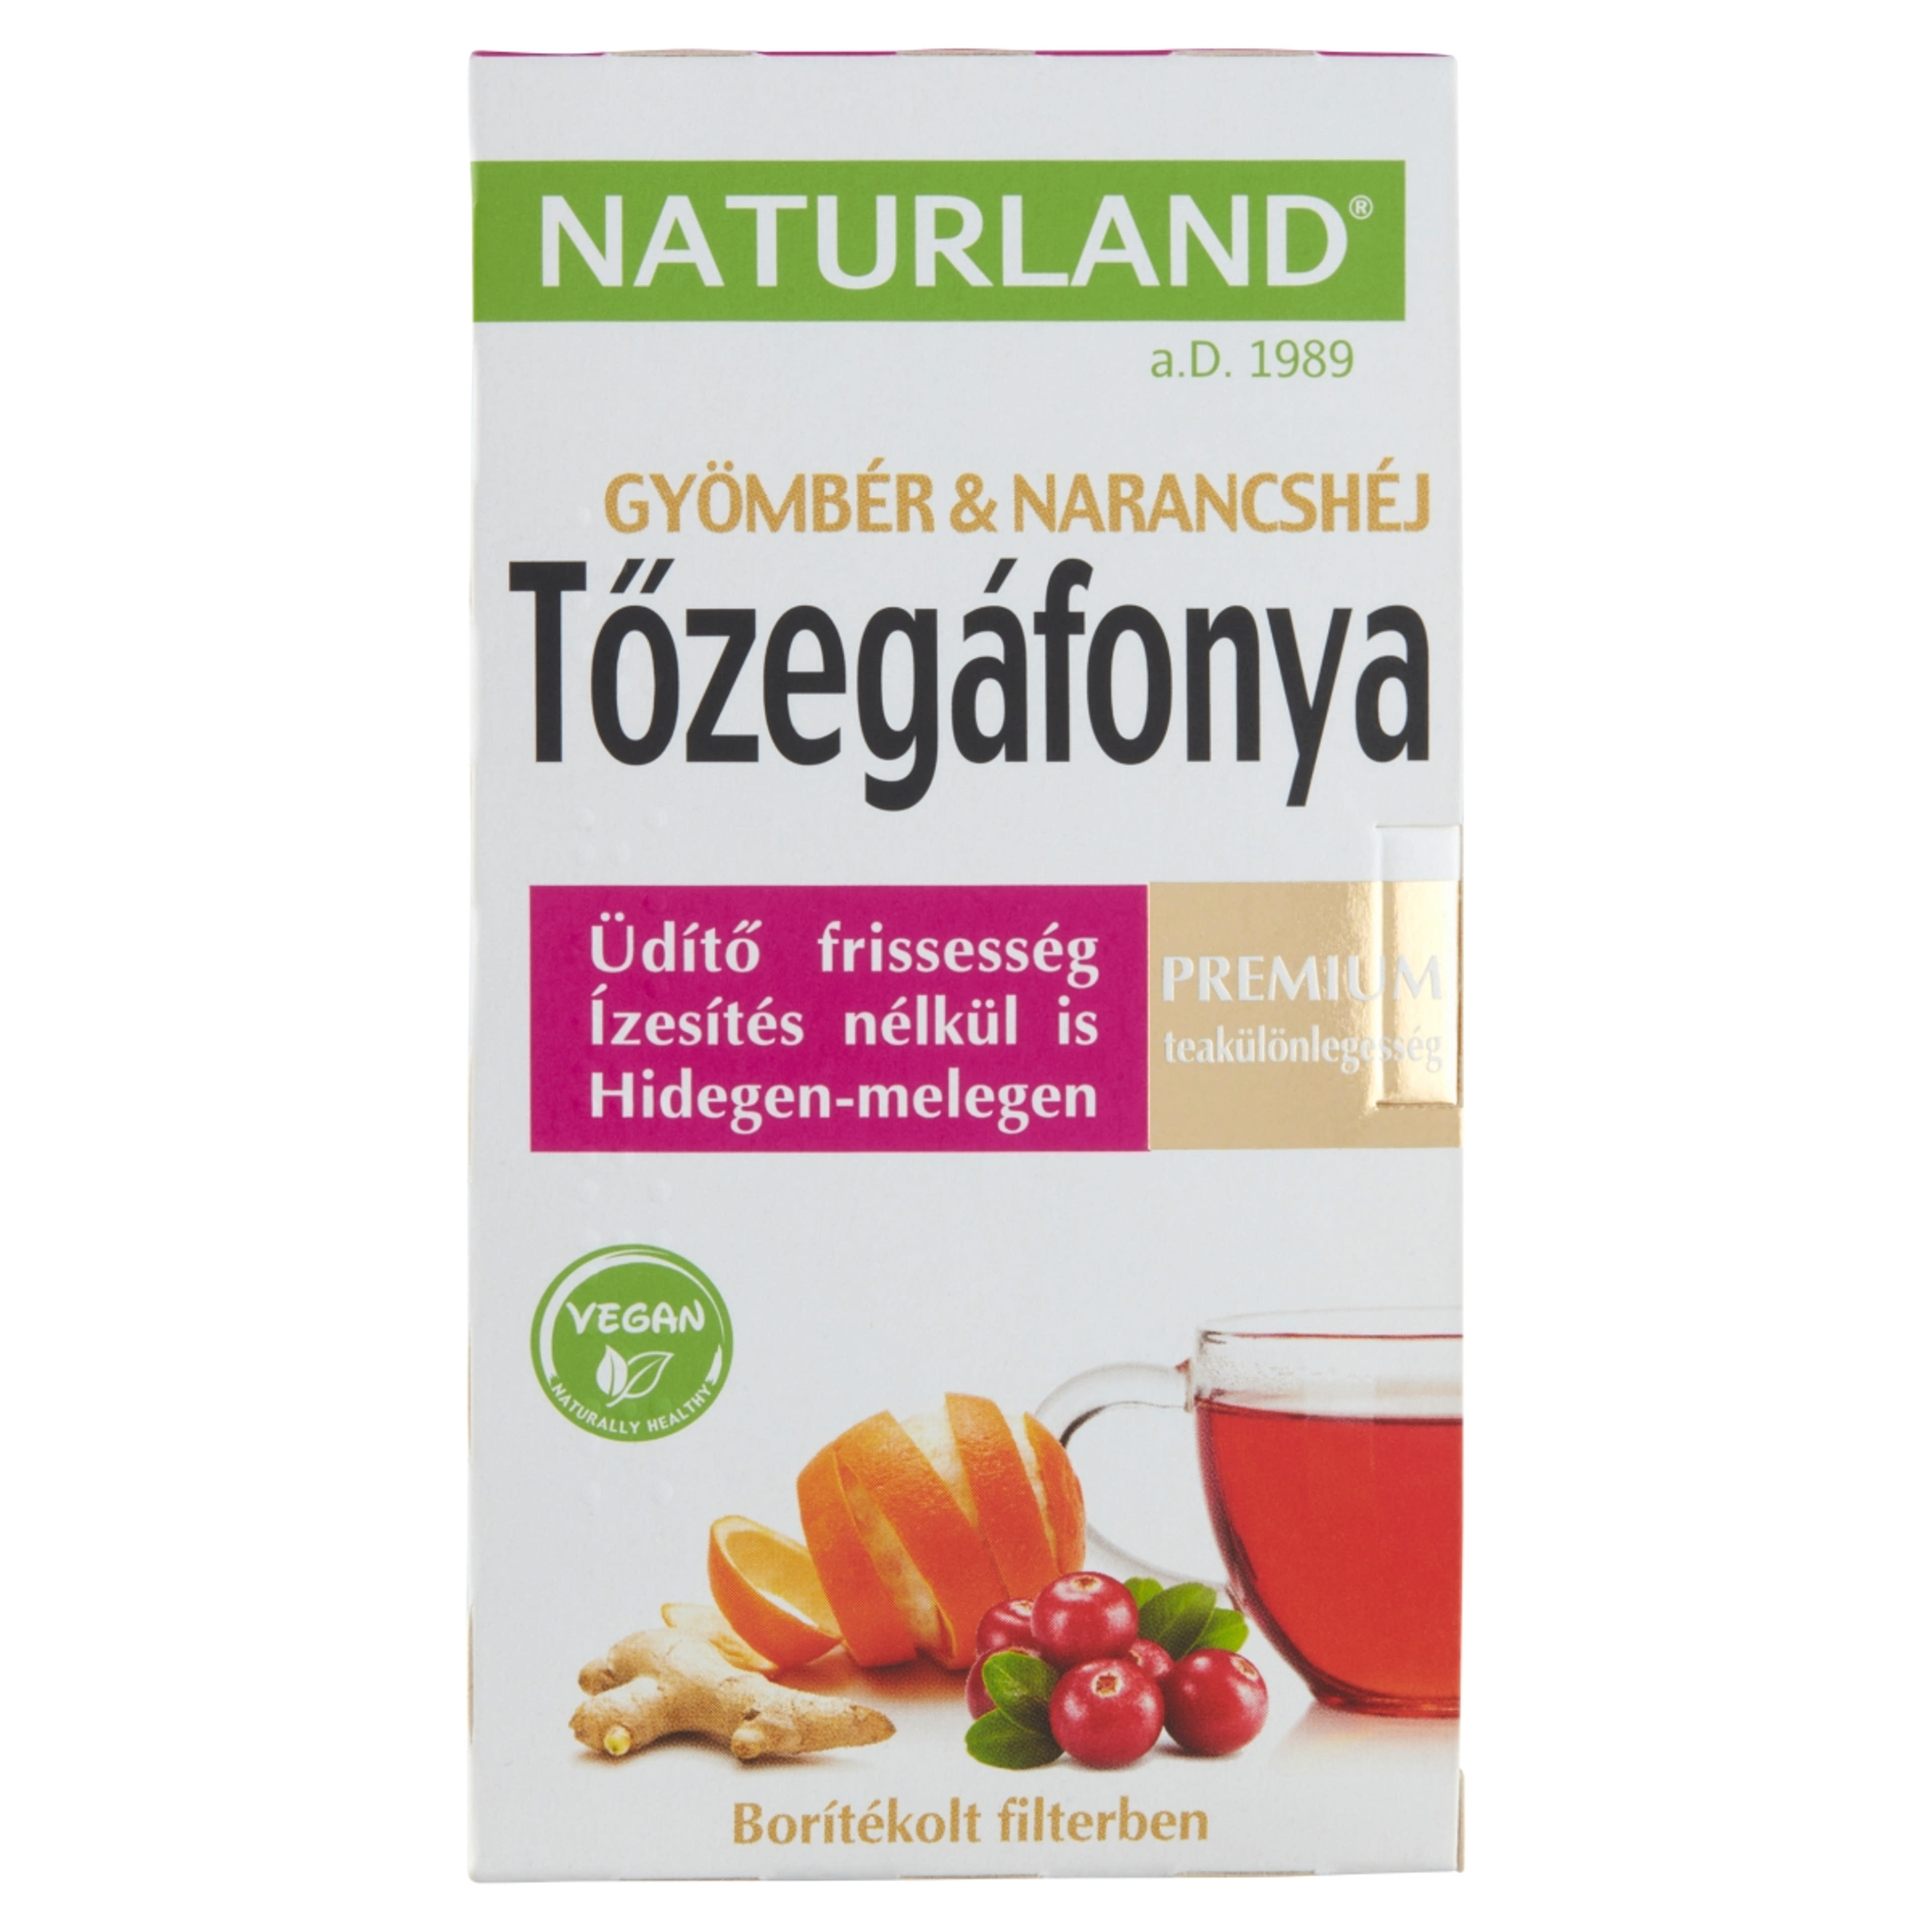 Naturland Premium tőzegáfonya-gyömbér-narancshéj teakeverék - 40 g